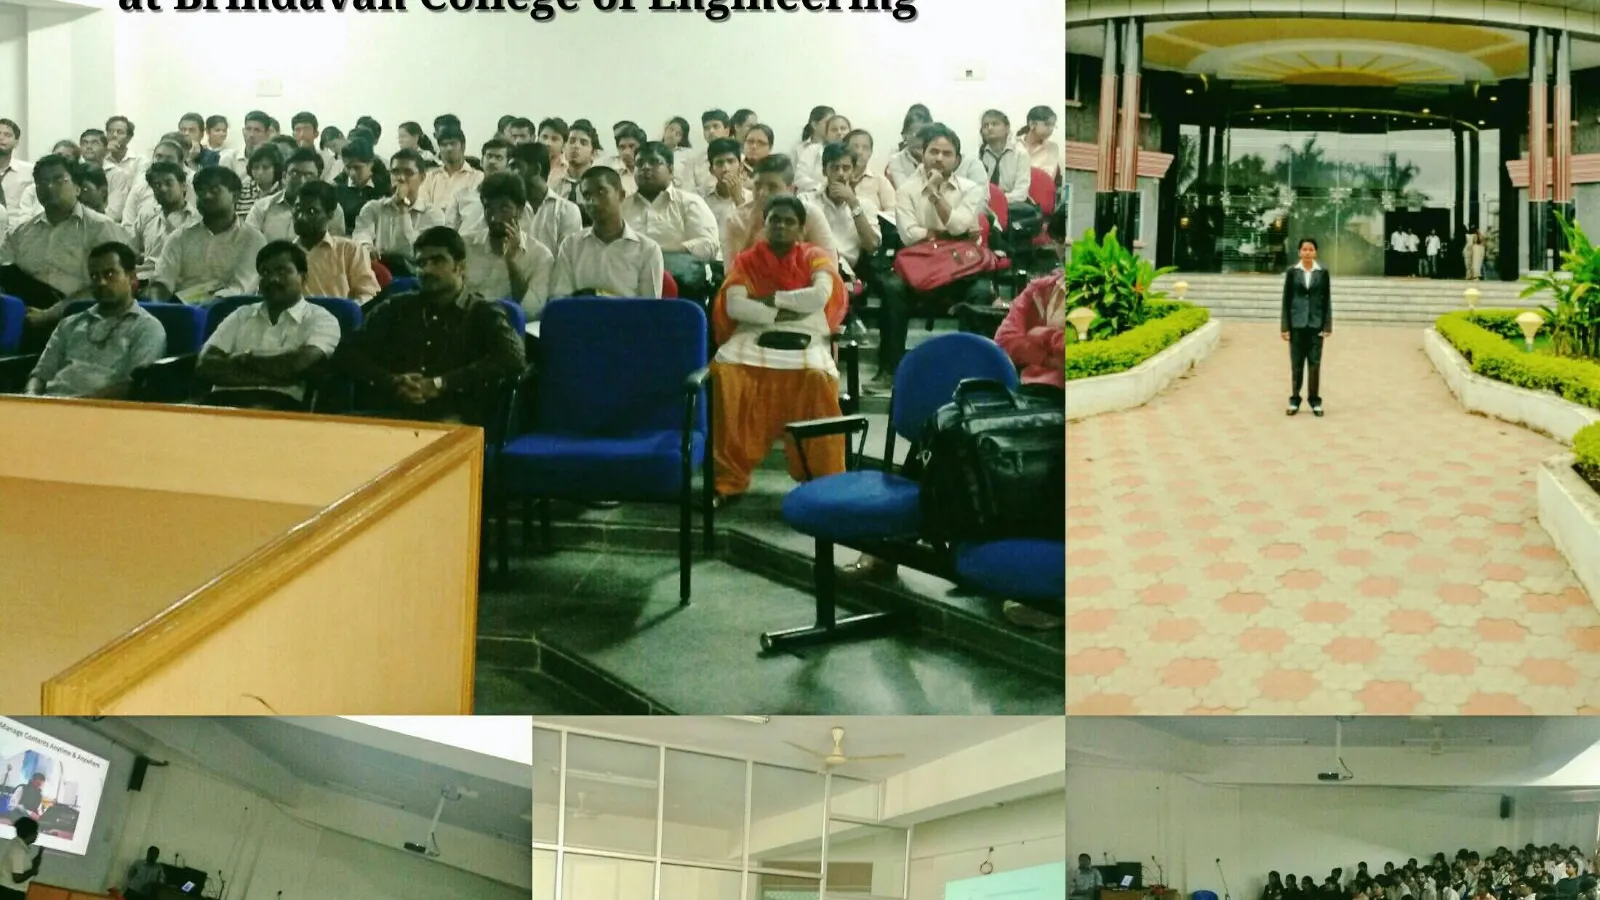 Brindavan College of Engineering